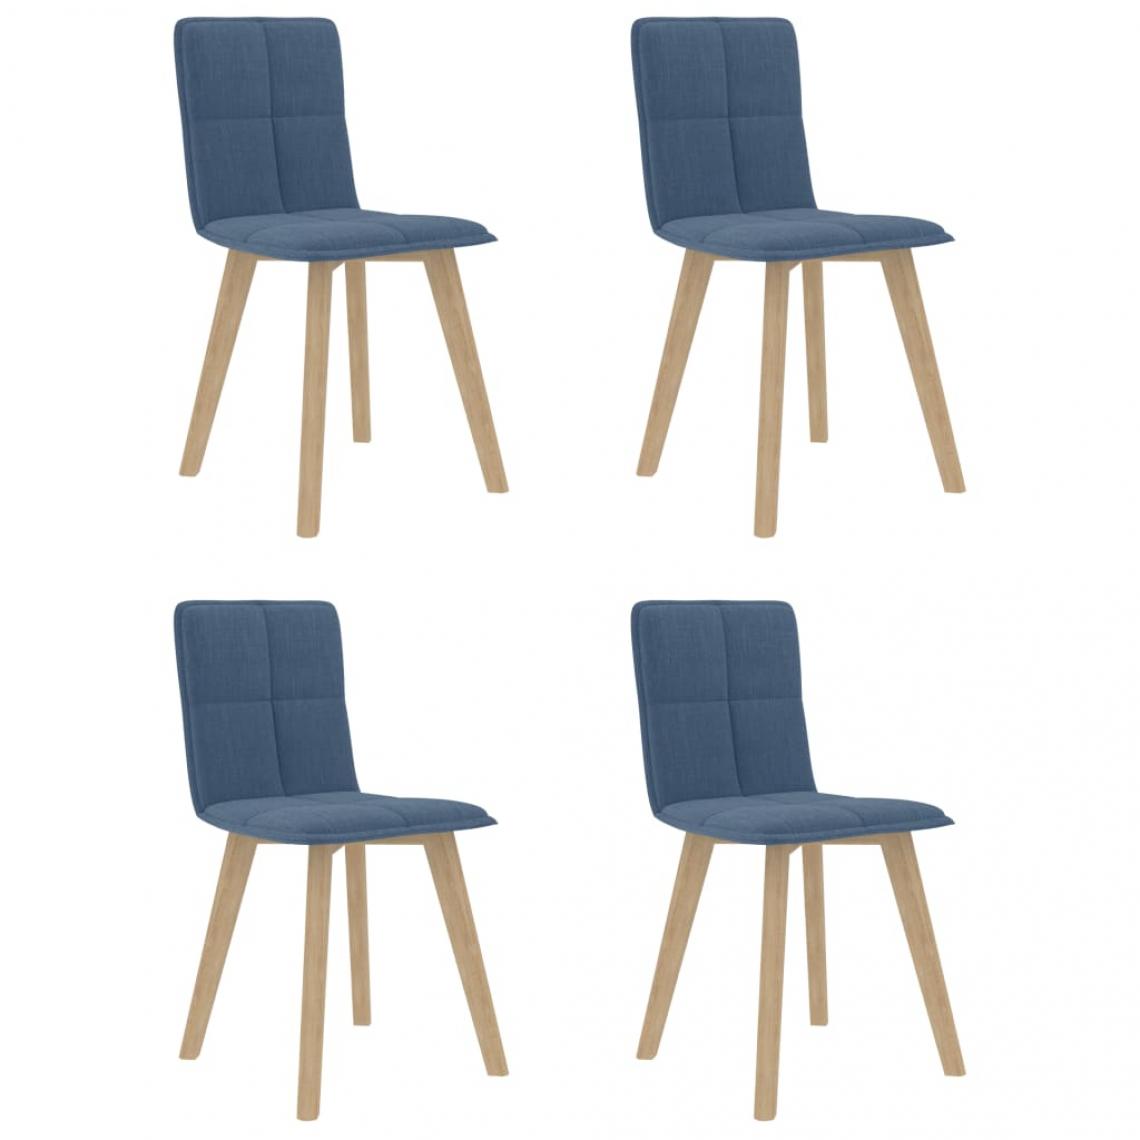 Decoshop26 - Lot de 4 chaises de salle à manger cuisine design moderne tissu bleu CDS021285 - Chaises